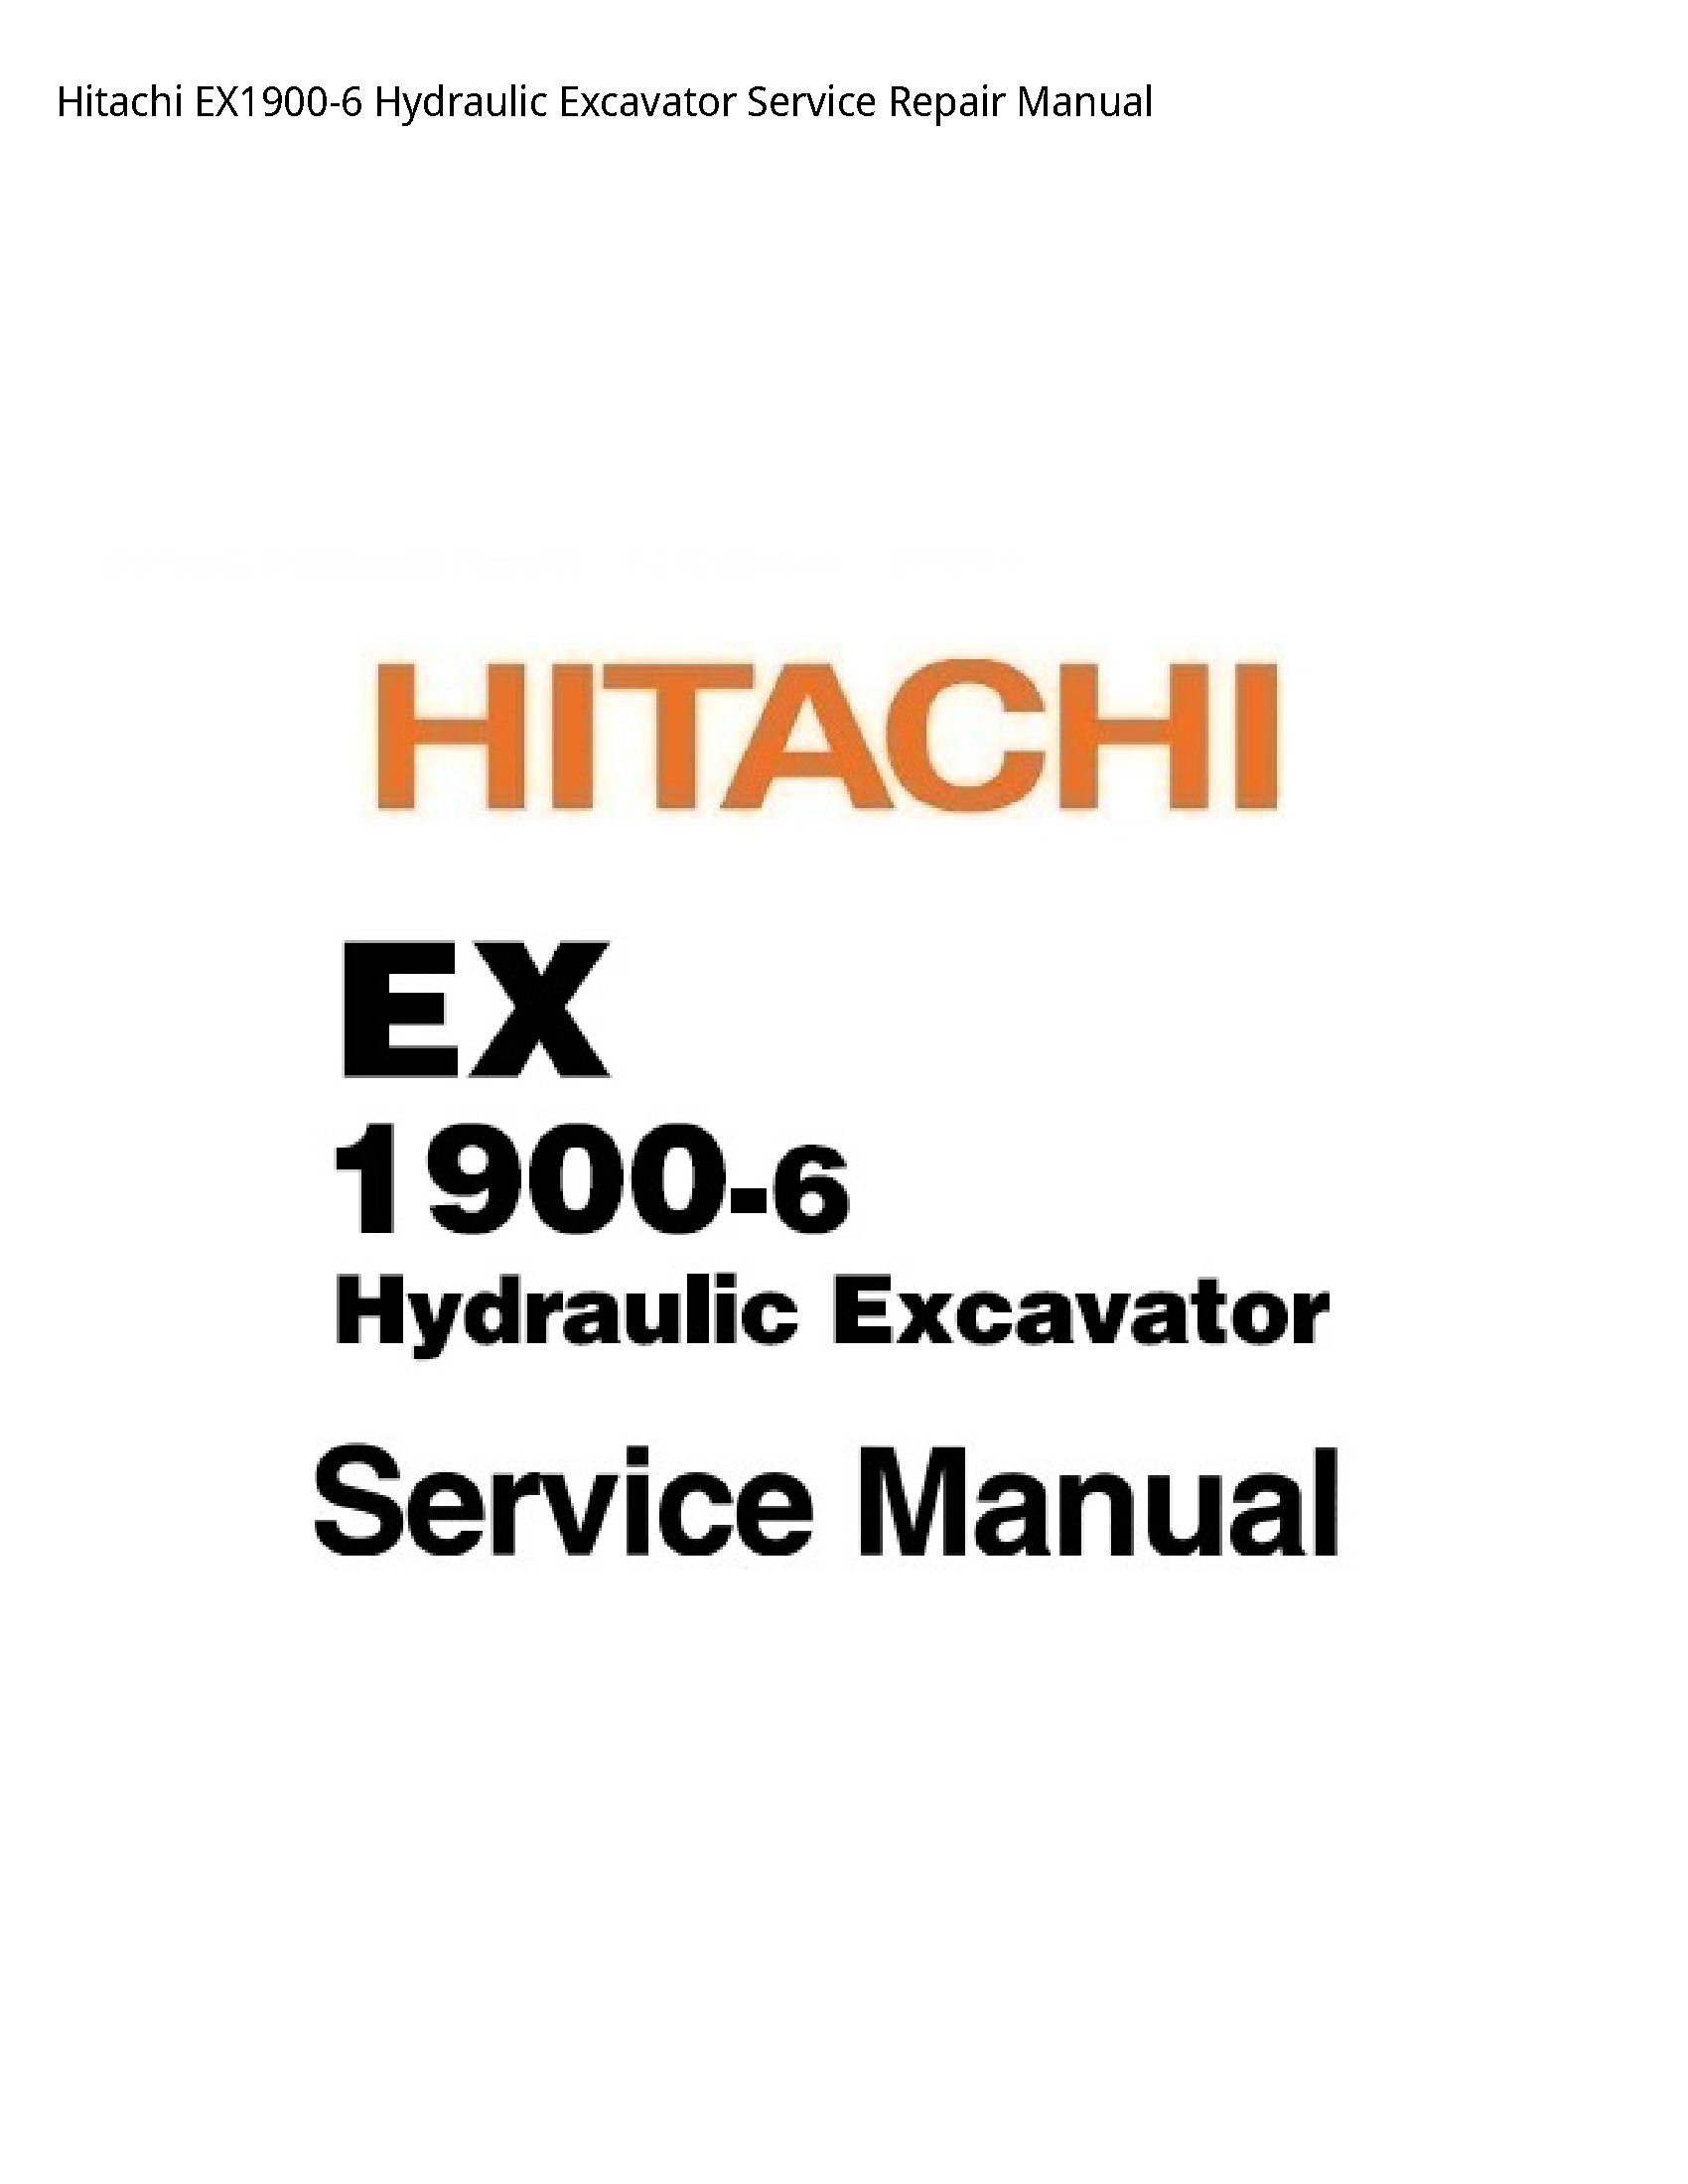 Hitachi EX1900-6 Hydraulic Excavator manual